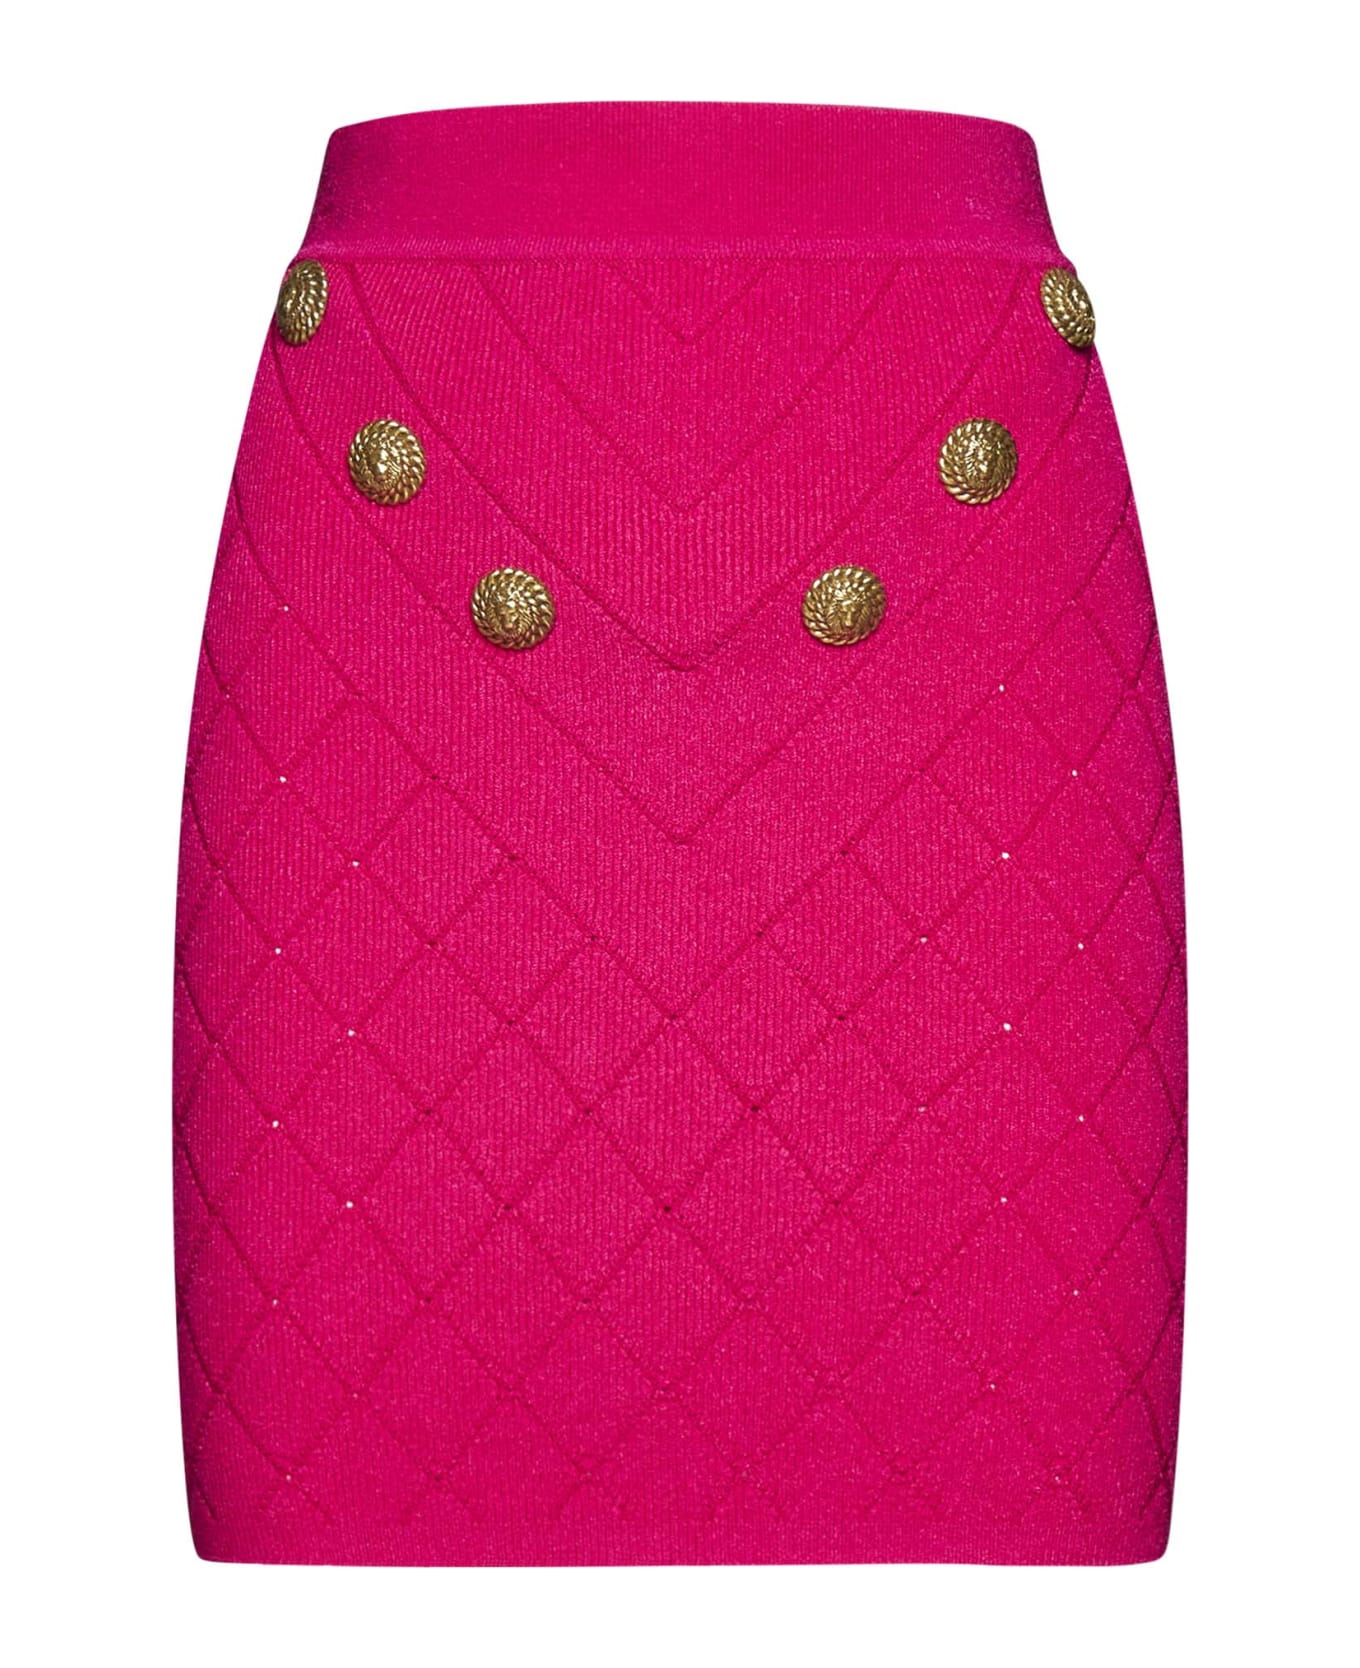 Balmain 6-button Knit Skirt - Pink スカート